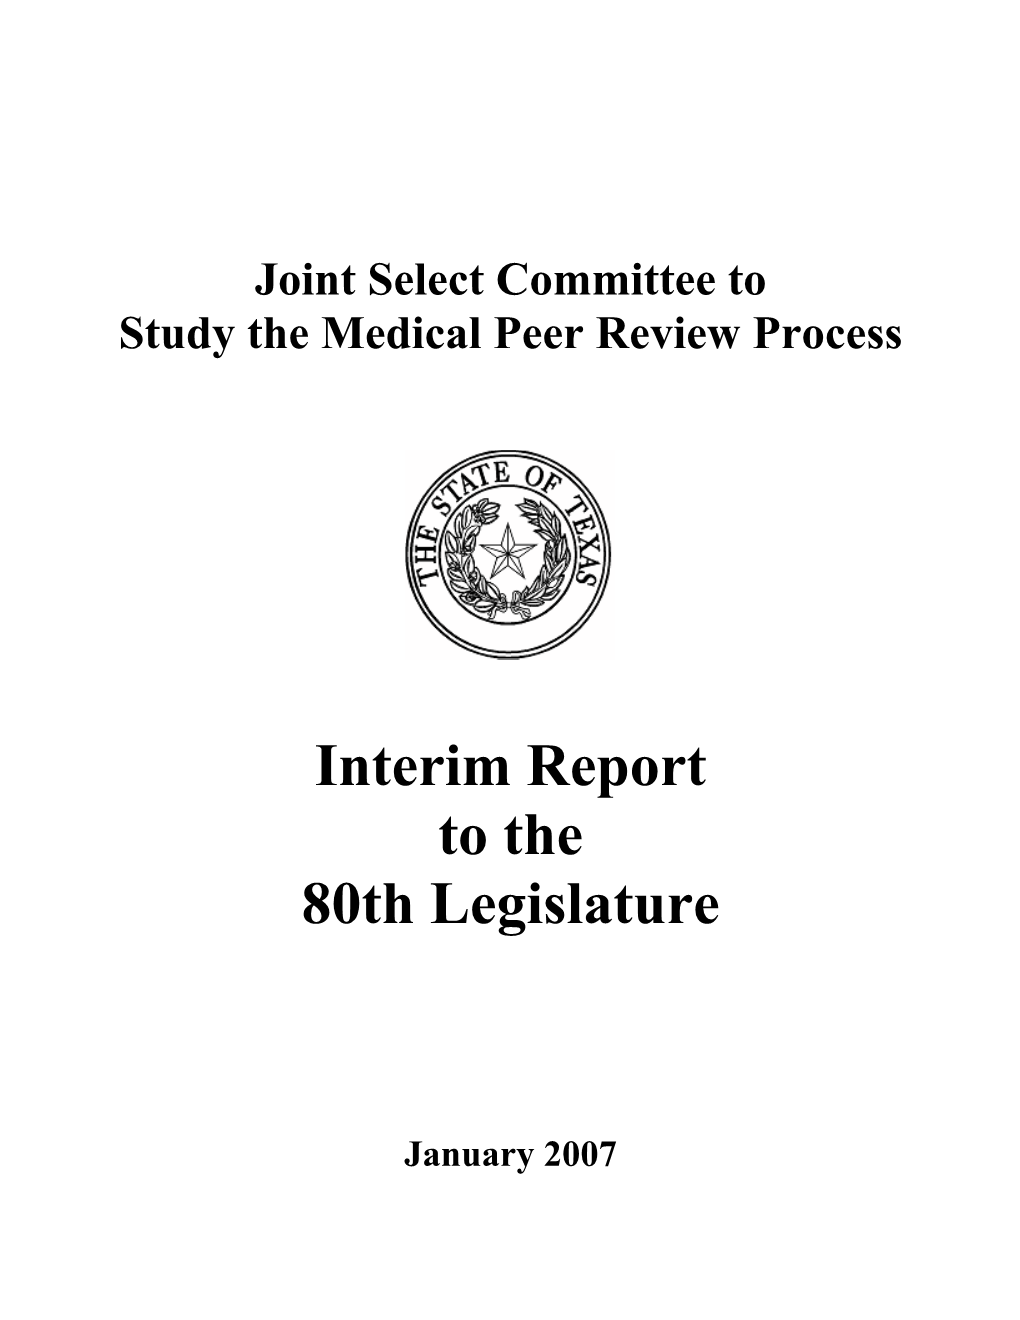 Interim Report to the 80Th Legislature